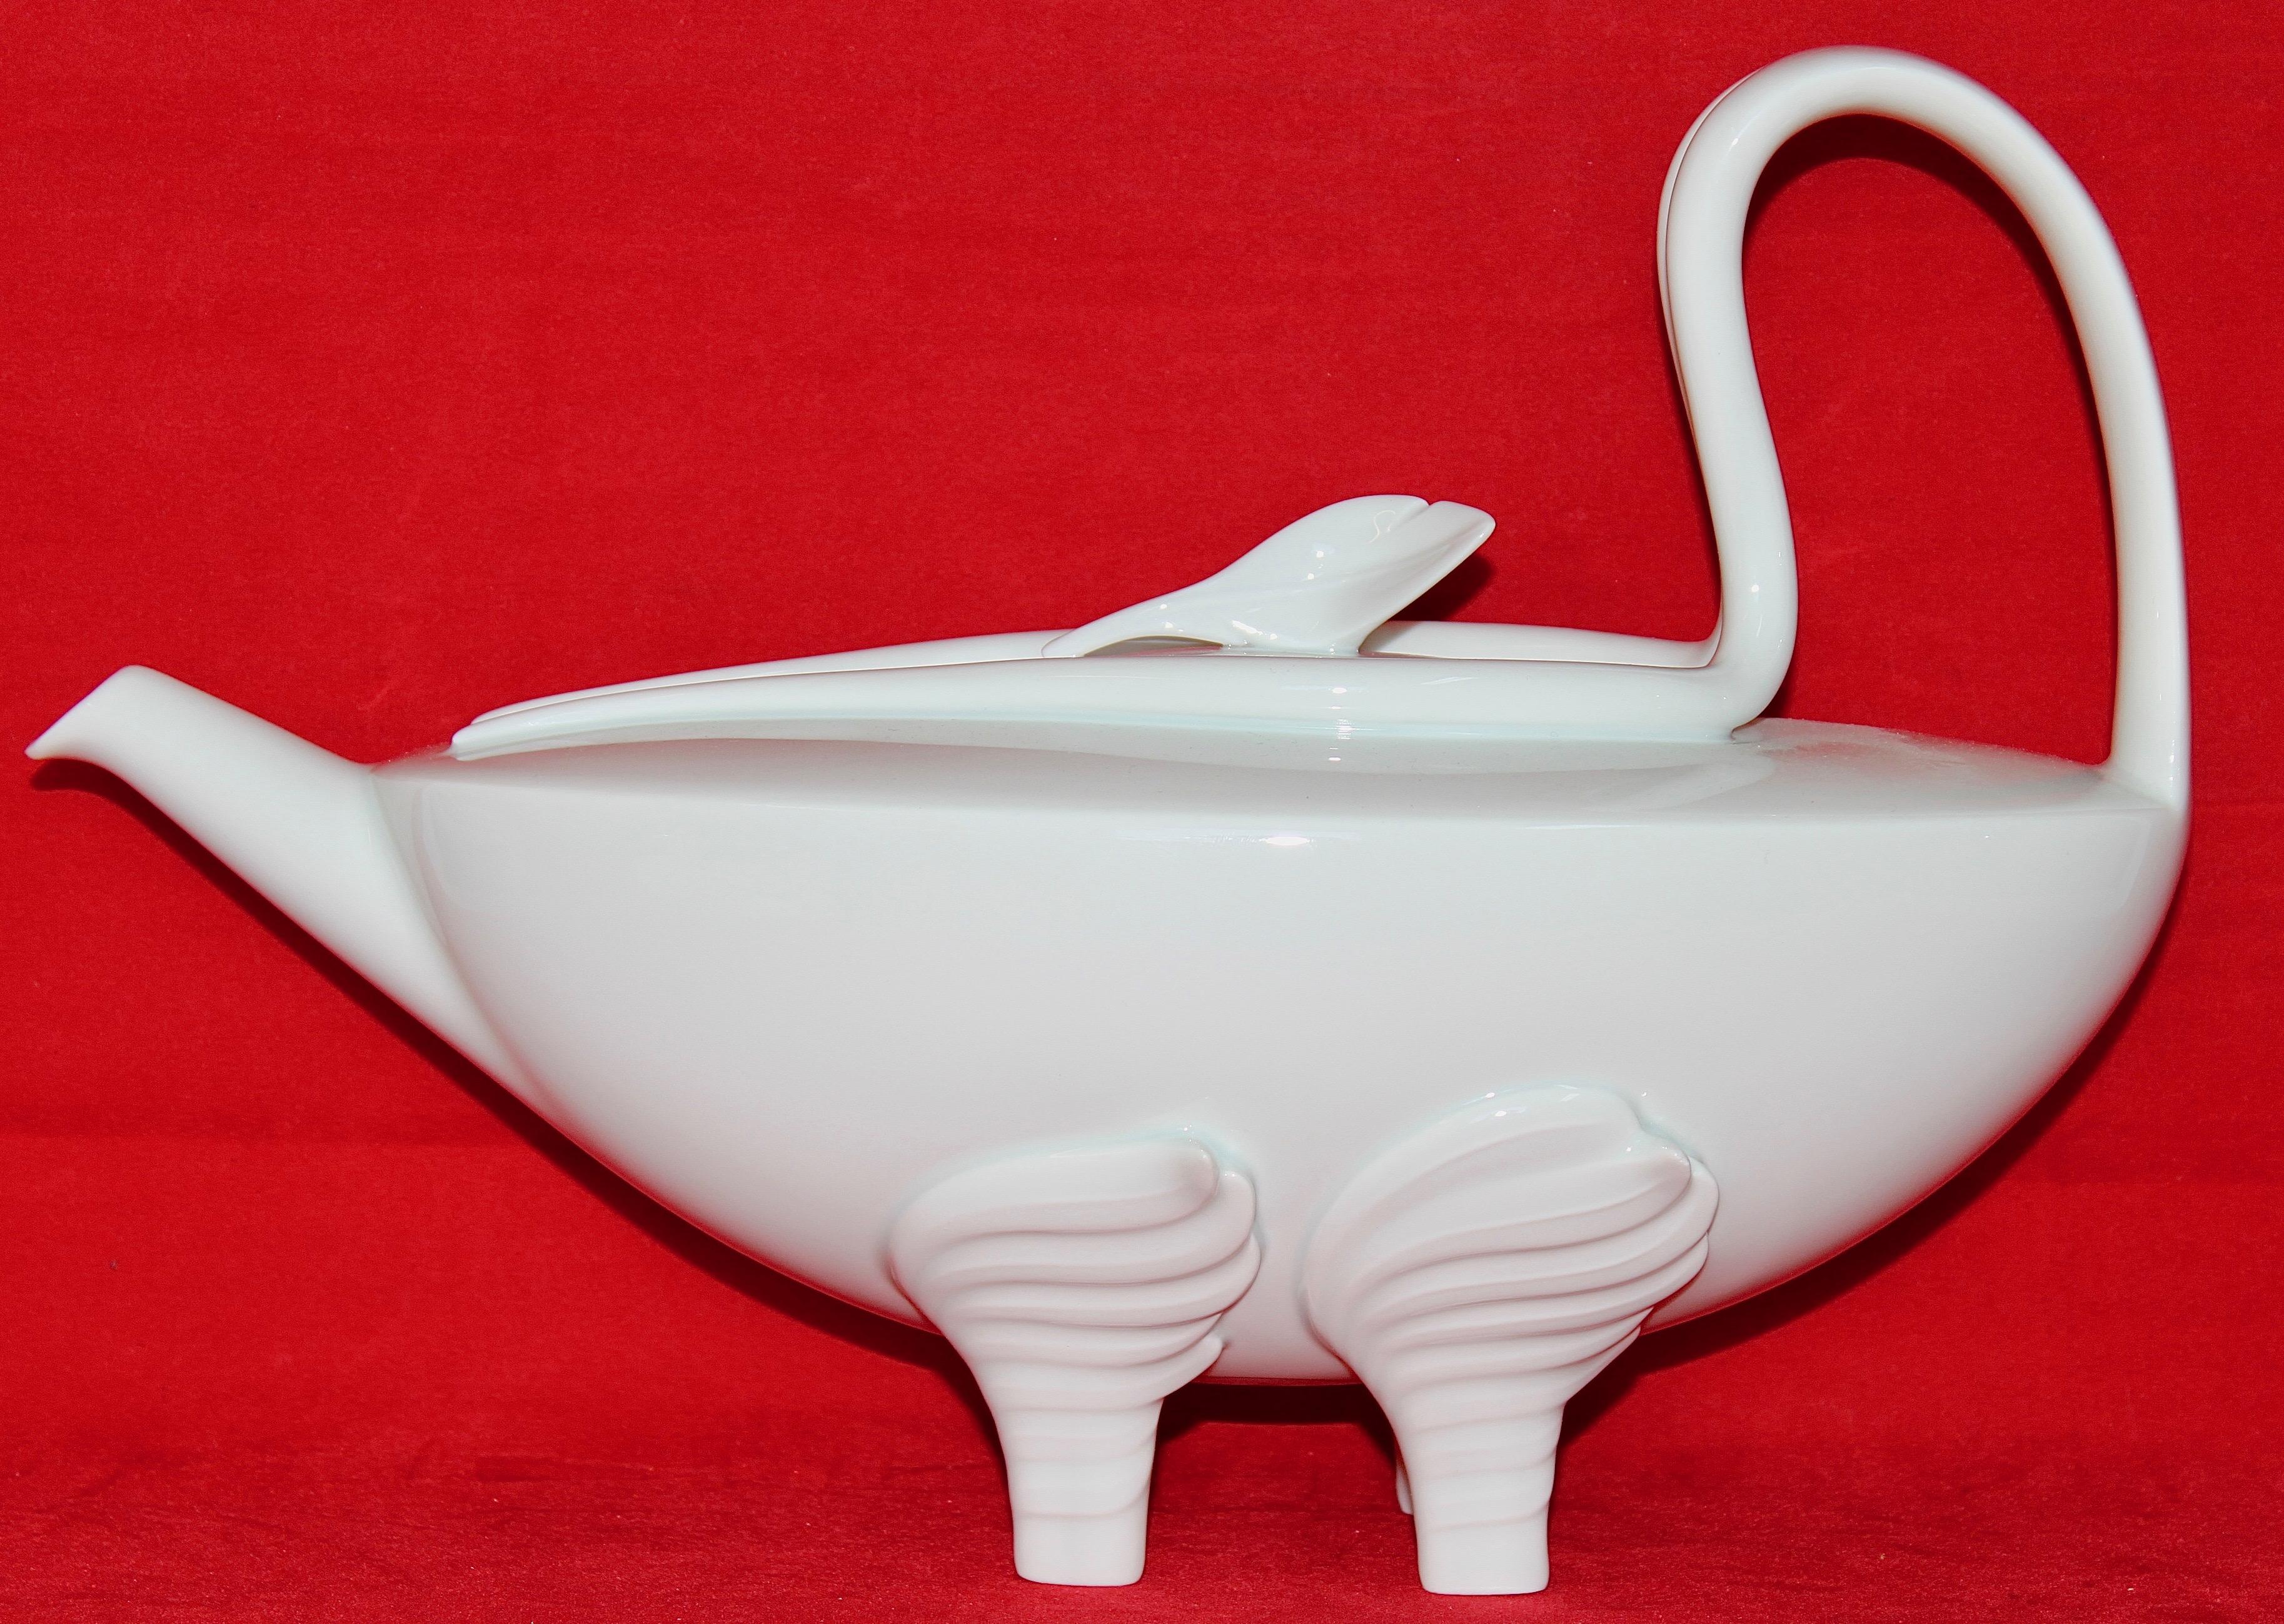 Rosenthal designer porcelain tea set for six. 